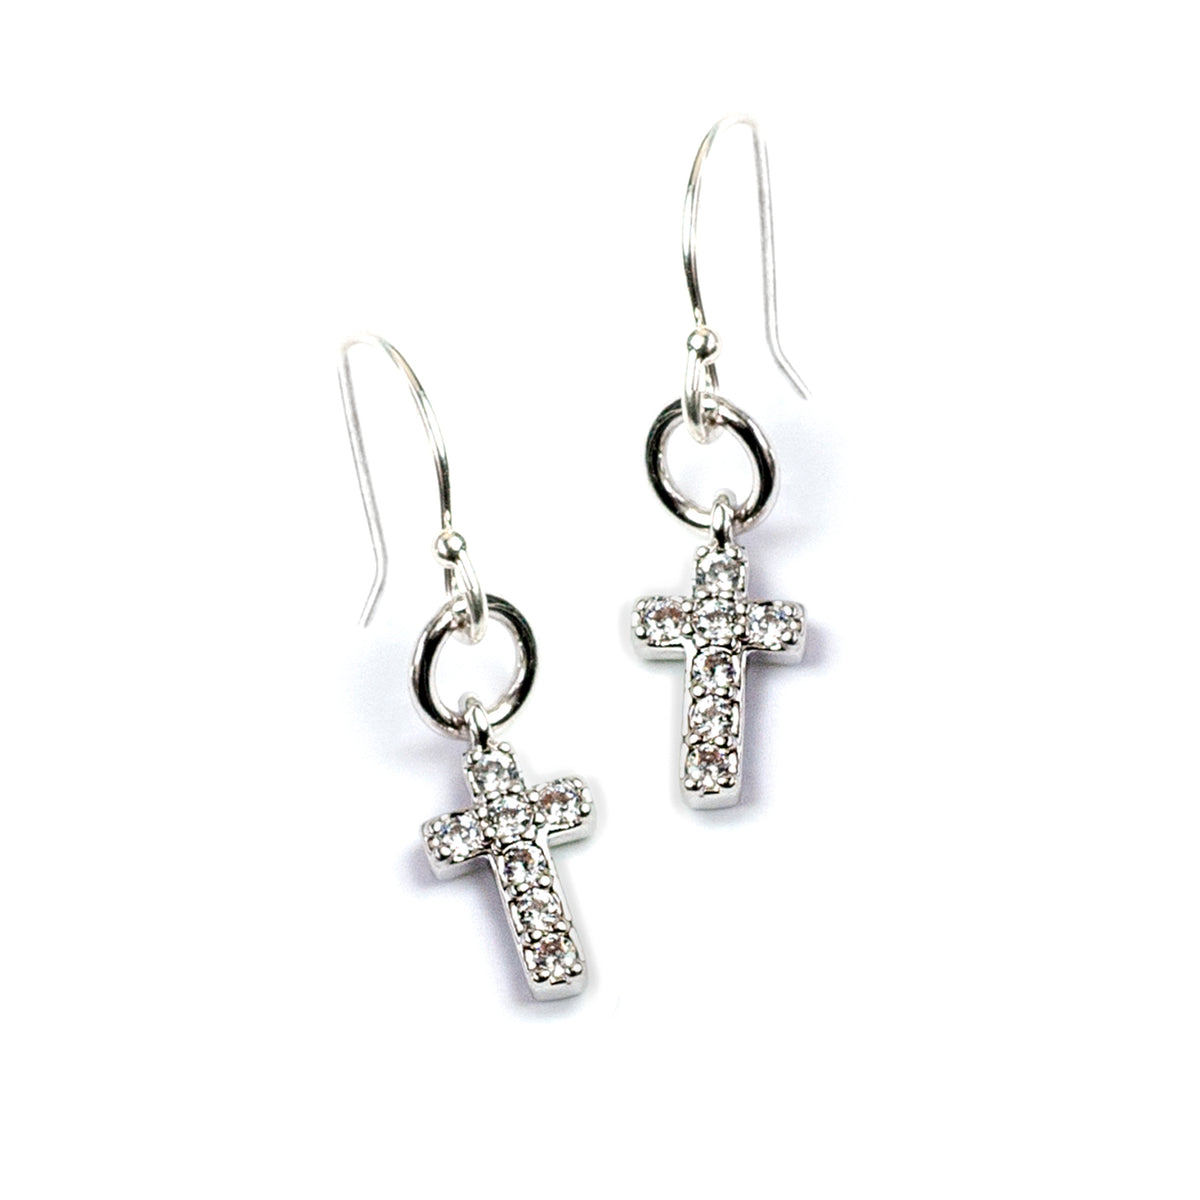 Religious – Sweet Romance Jewelry